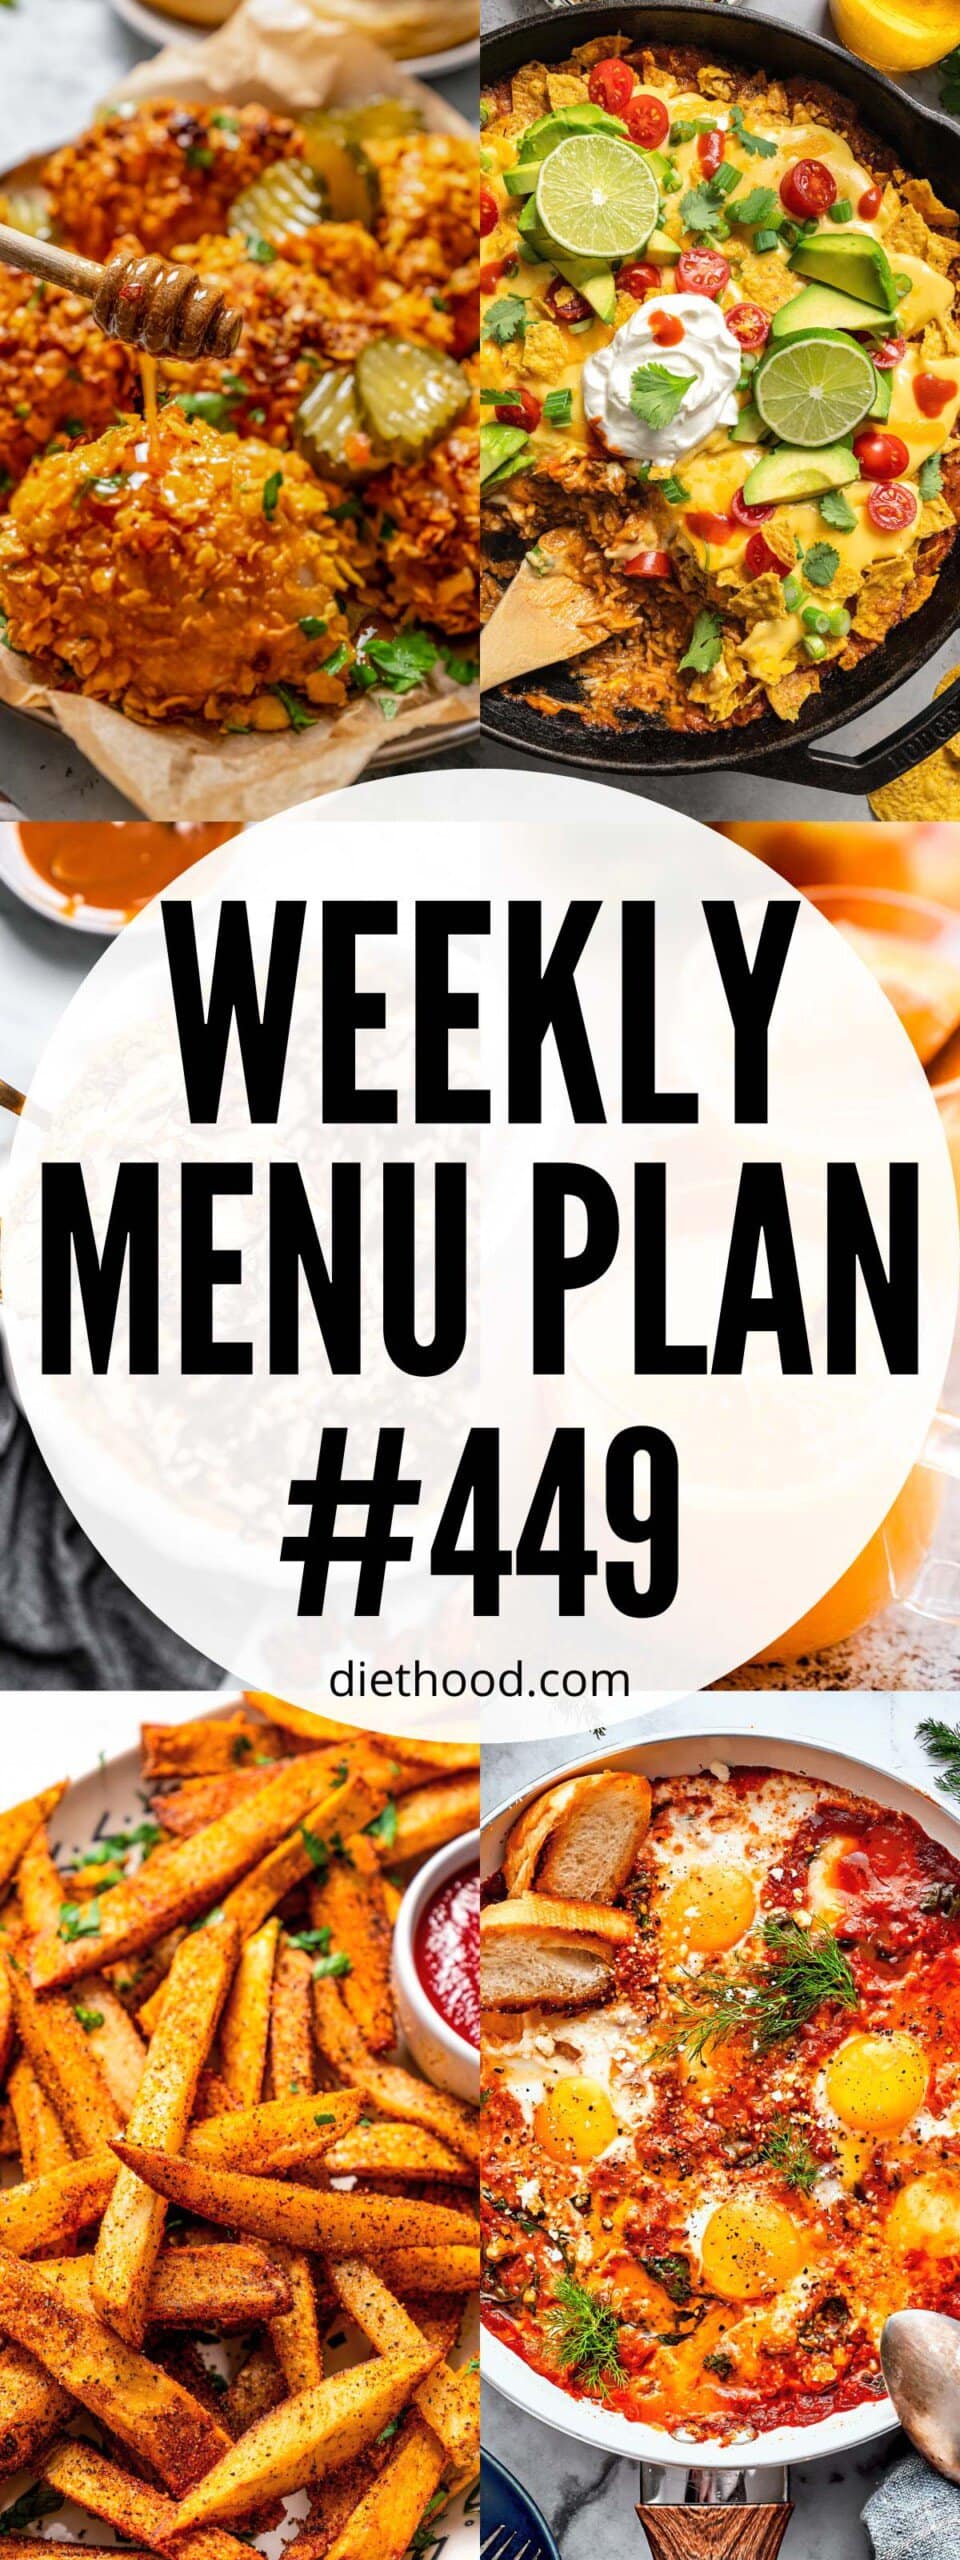 Weekly Menu Plan 449 six image collage Pinterest image.